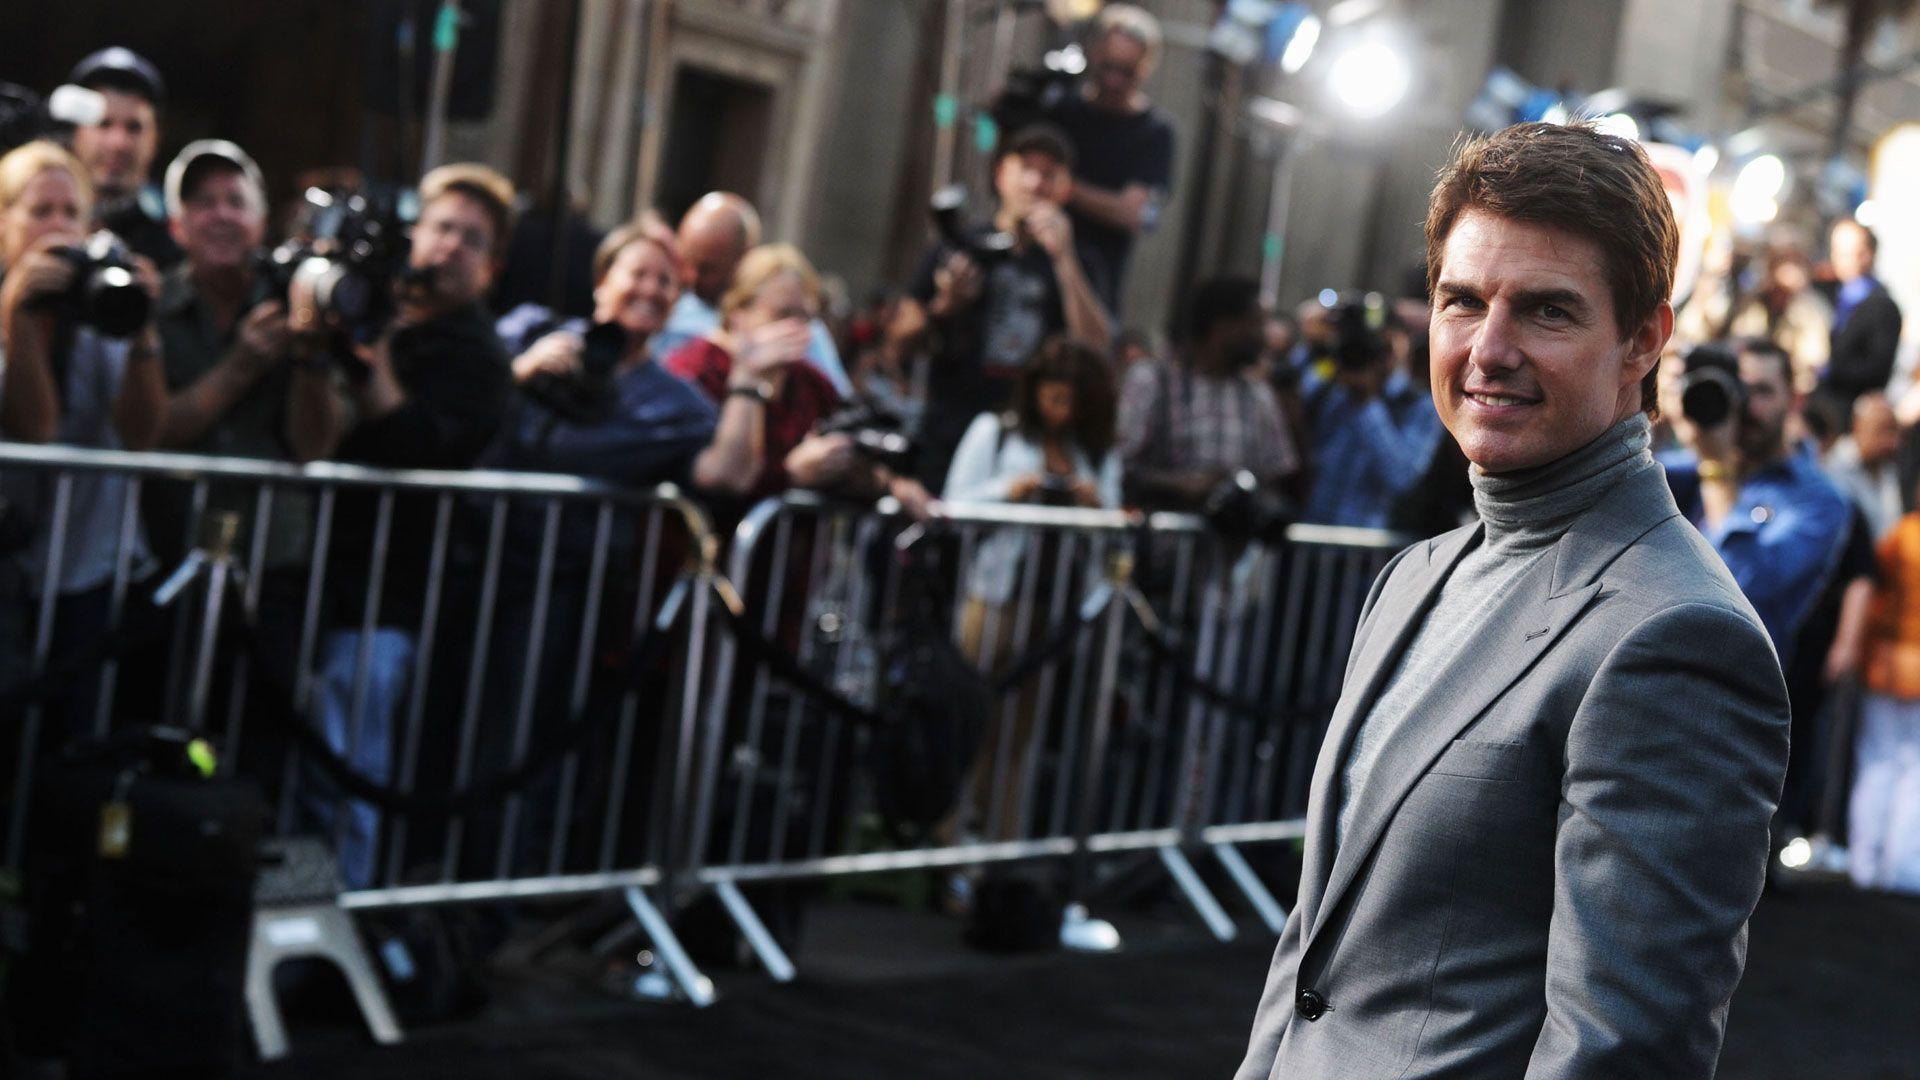 Tom Cruise Hopes For A 'Few Good Men' Reunion On Doug Liman Helmed